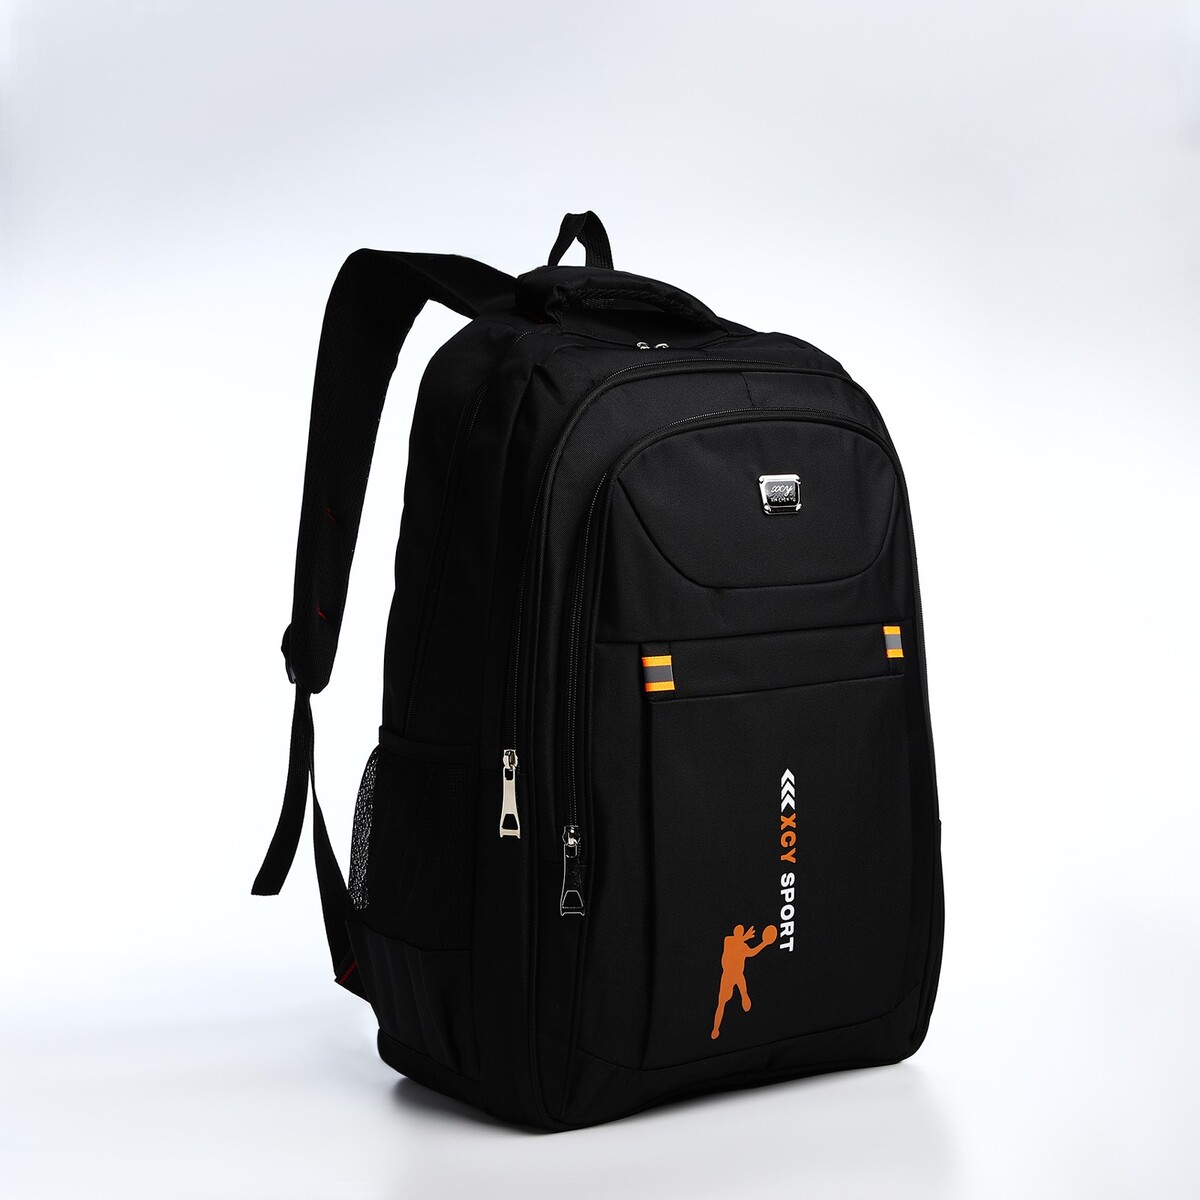 Рюкзак молодежный из текстиля, 2 отдела на молнии, 3 кармана, цвет черный/оранжевый